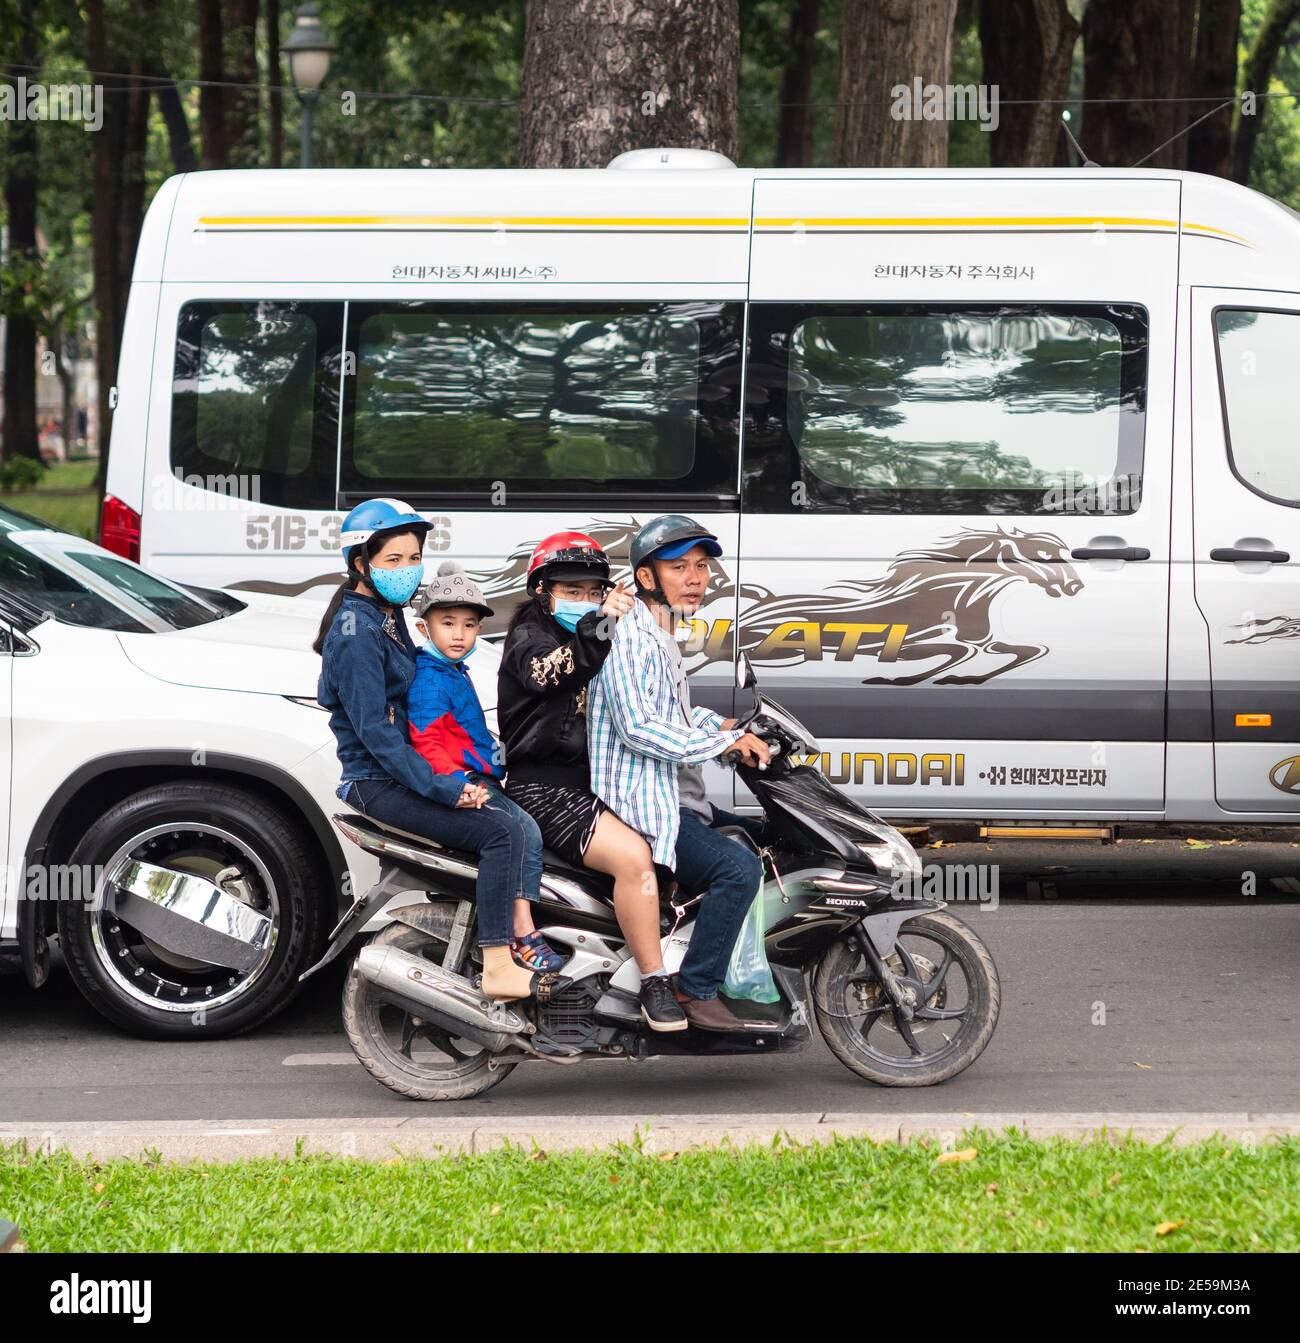 Moto avec quatre personnes dans la circulation dans le district 1, Ho Chi Minh ville, Vietnam. Banque D'Images